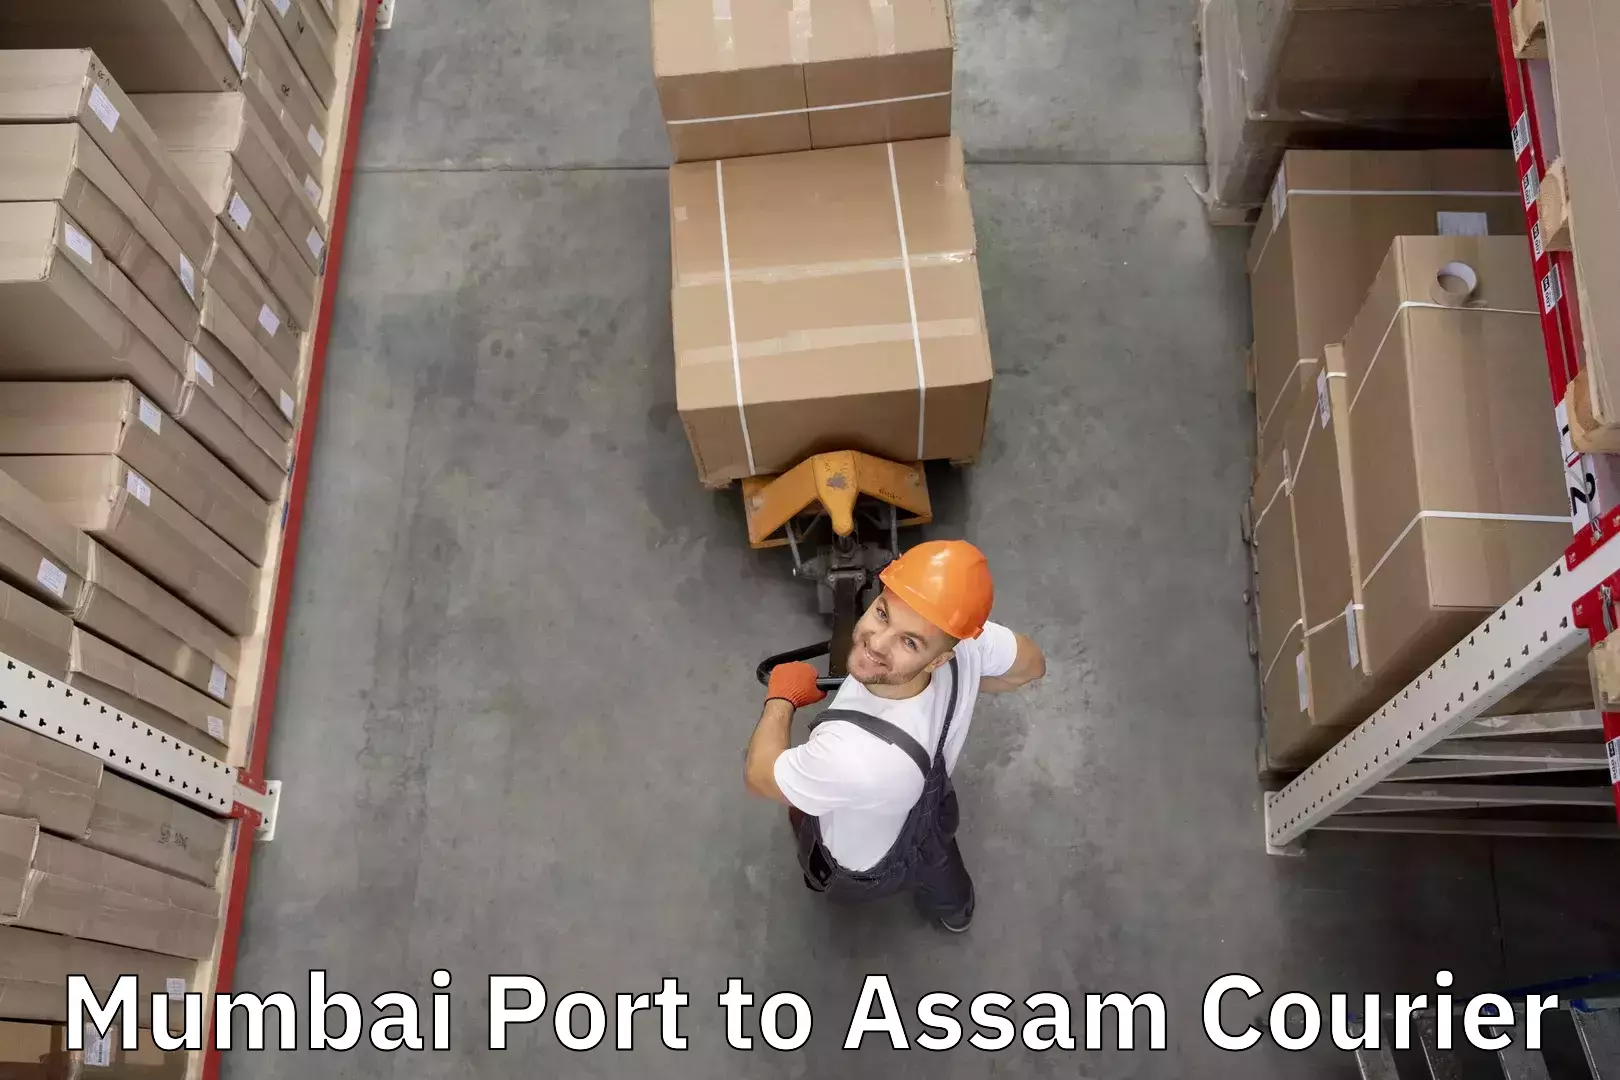 Baggage relocation service Mumbai Port to Hojai